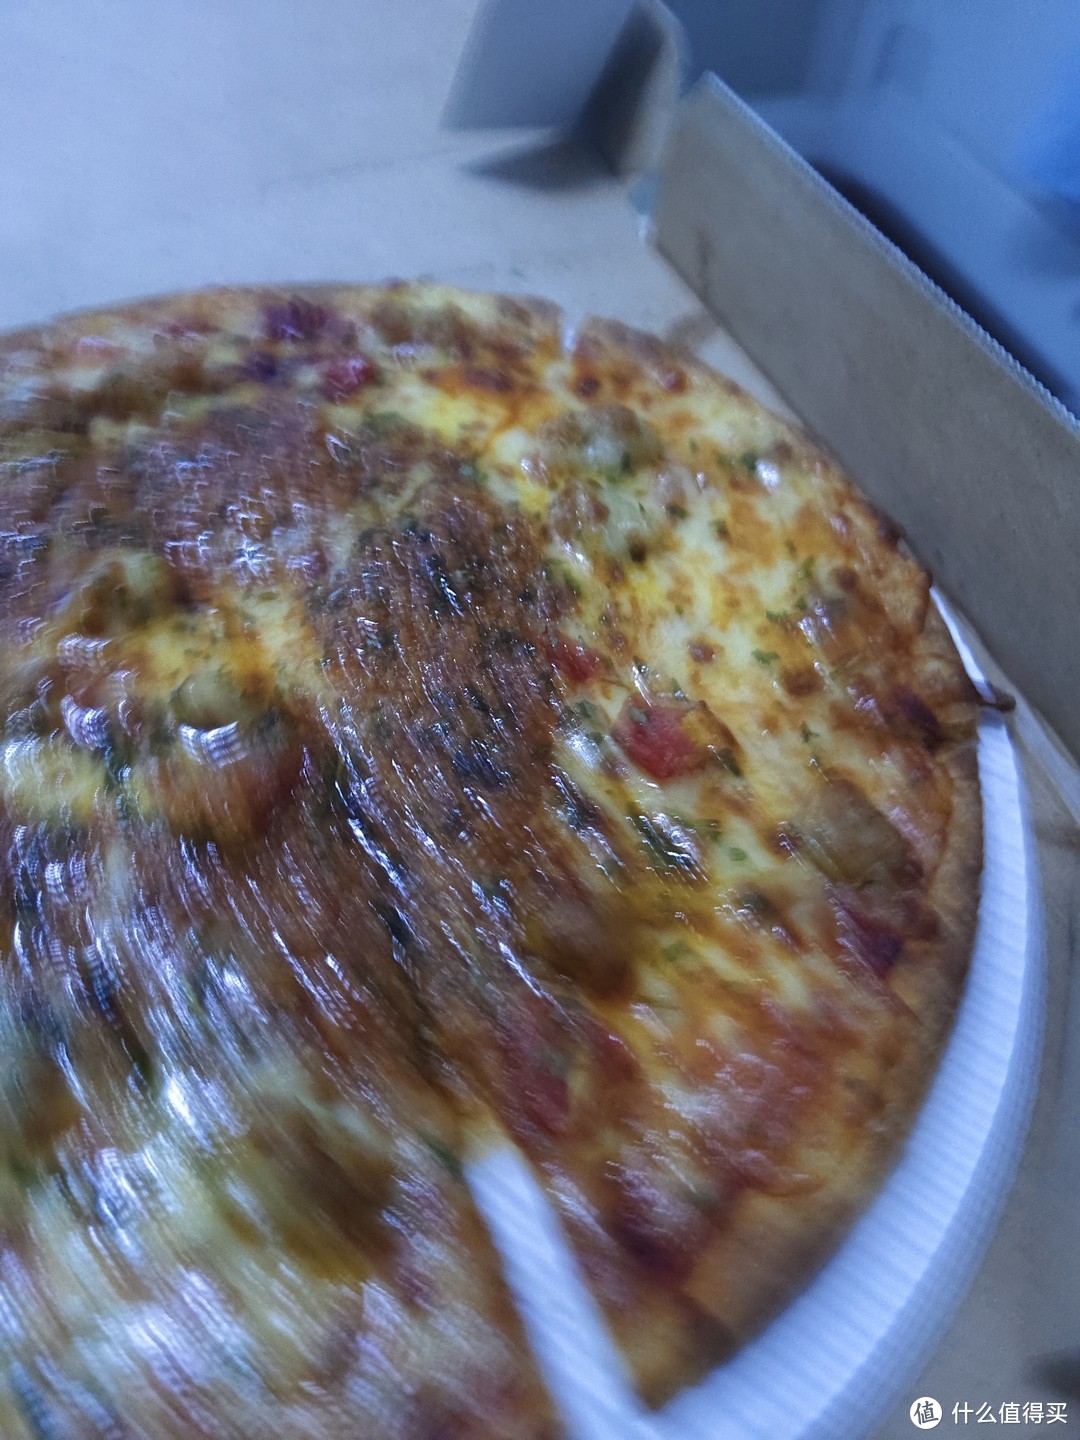 （618种草）达美乐披萨可太好吃了！